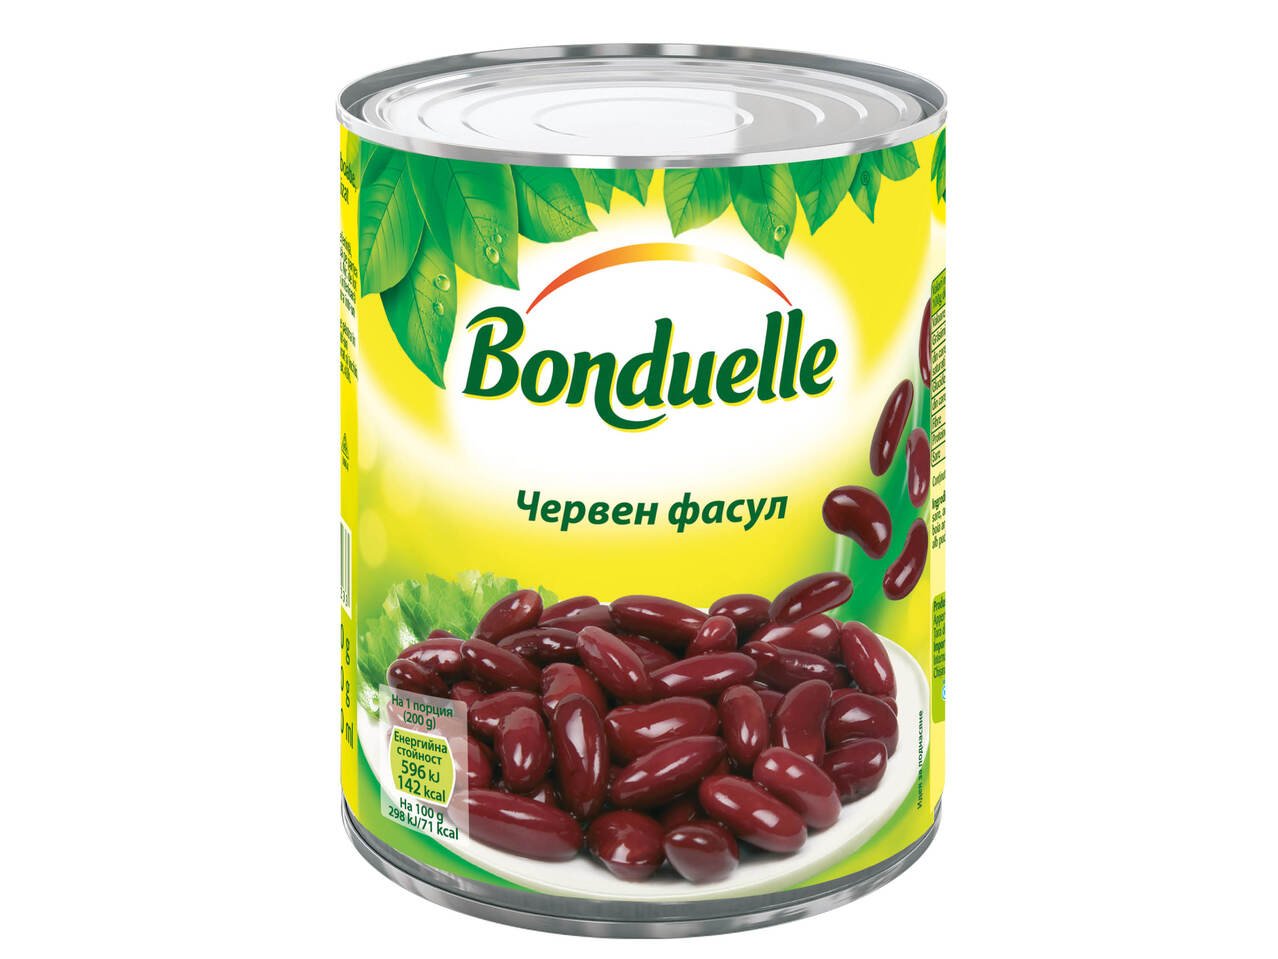 Bonduelle Сладка царевица, червен фасул или зелен грах